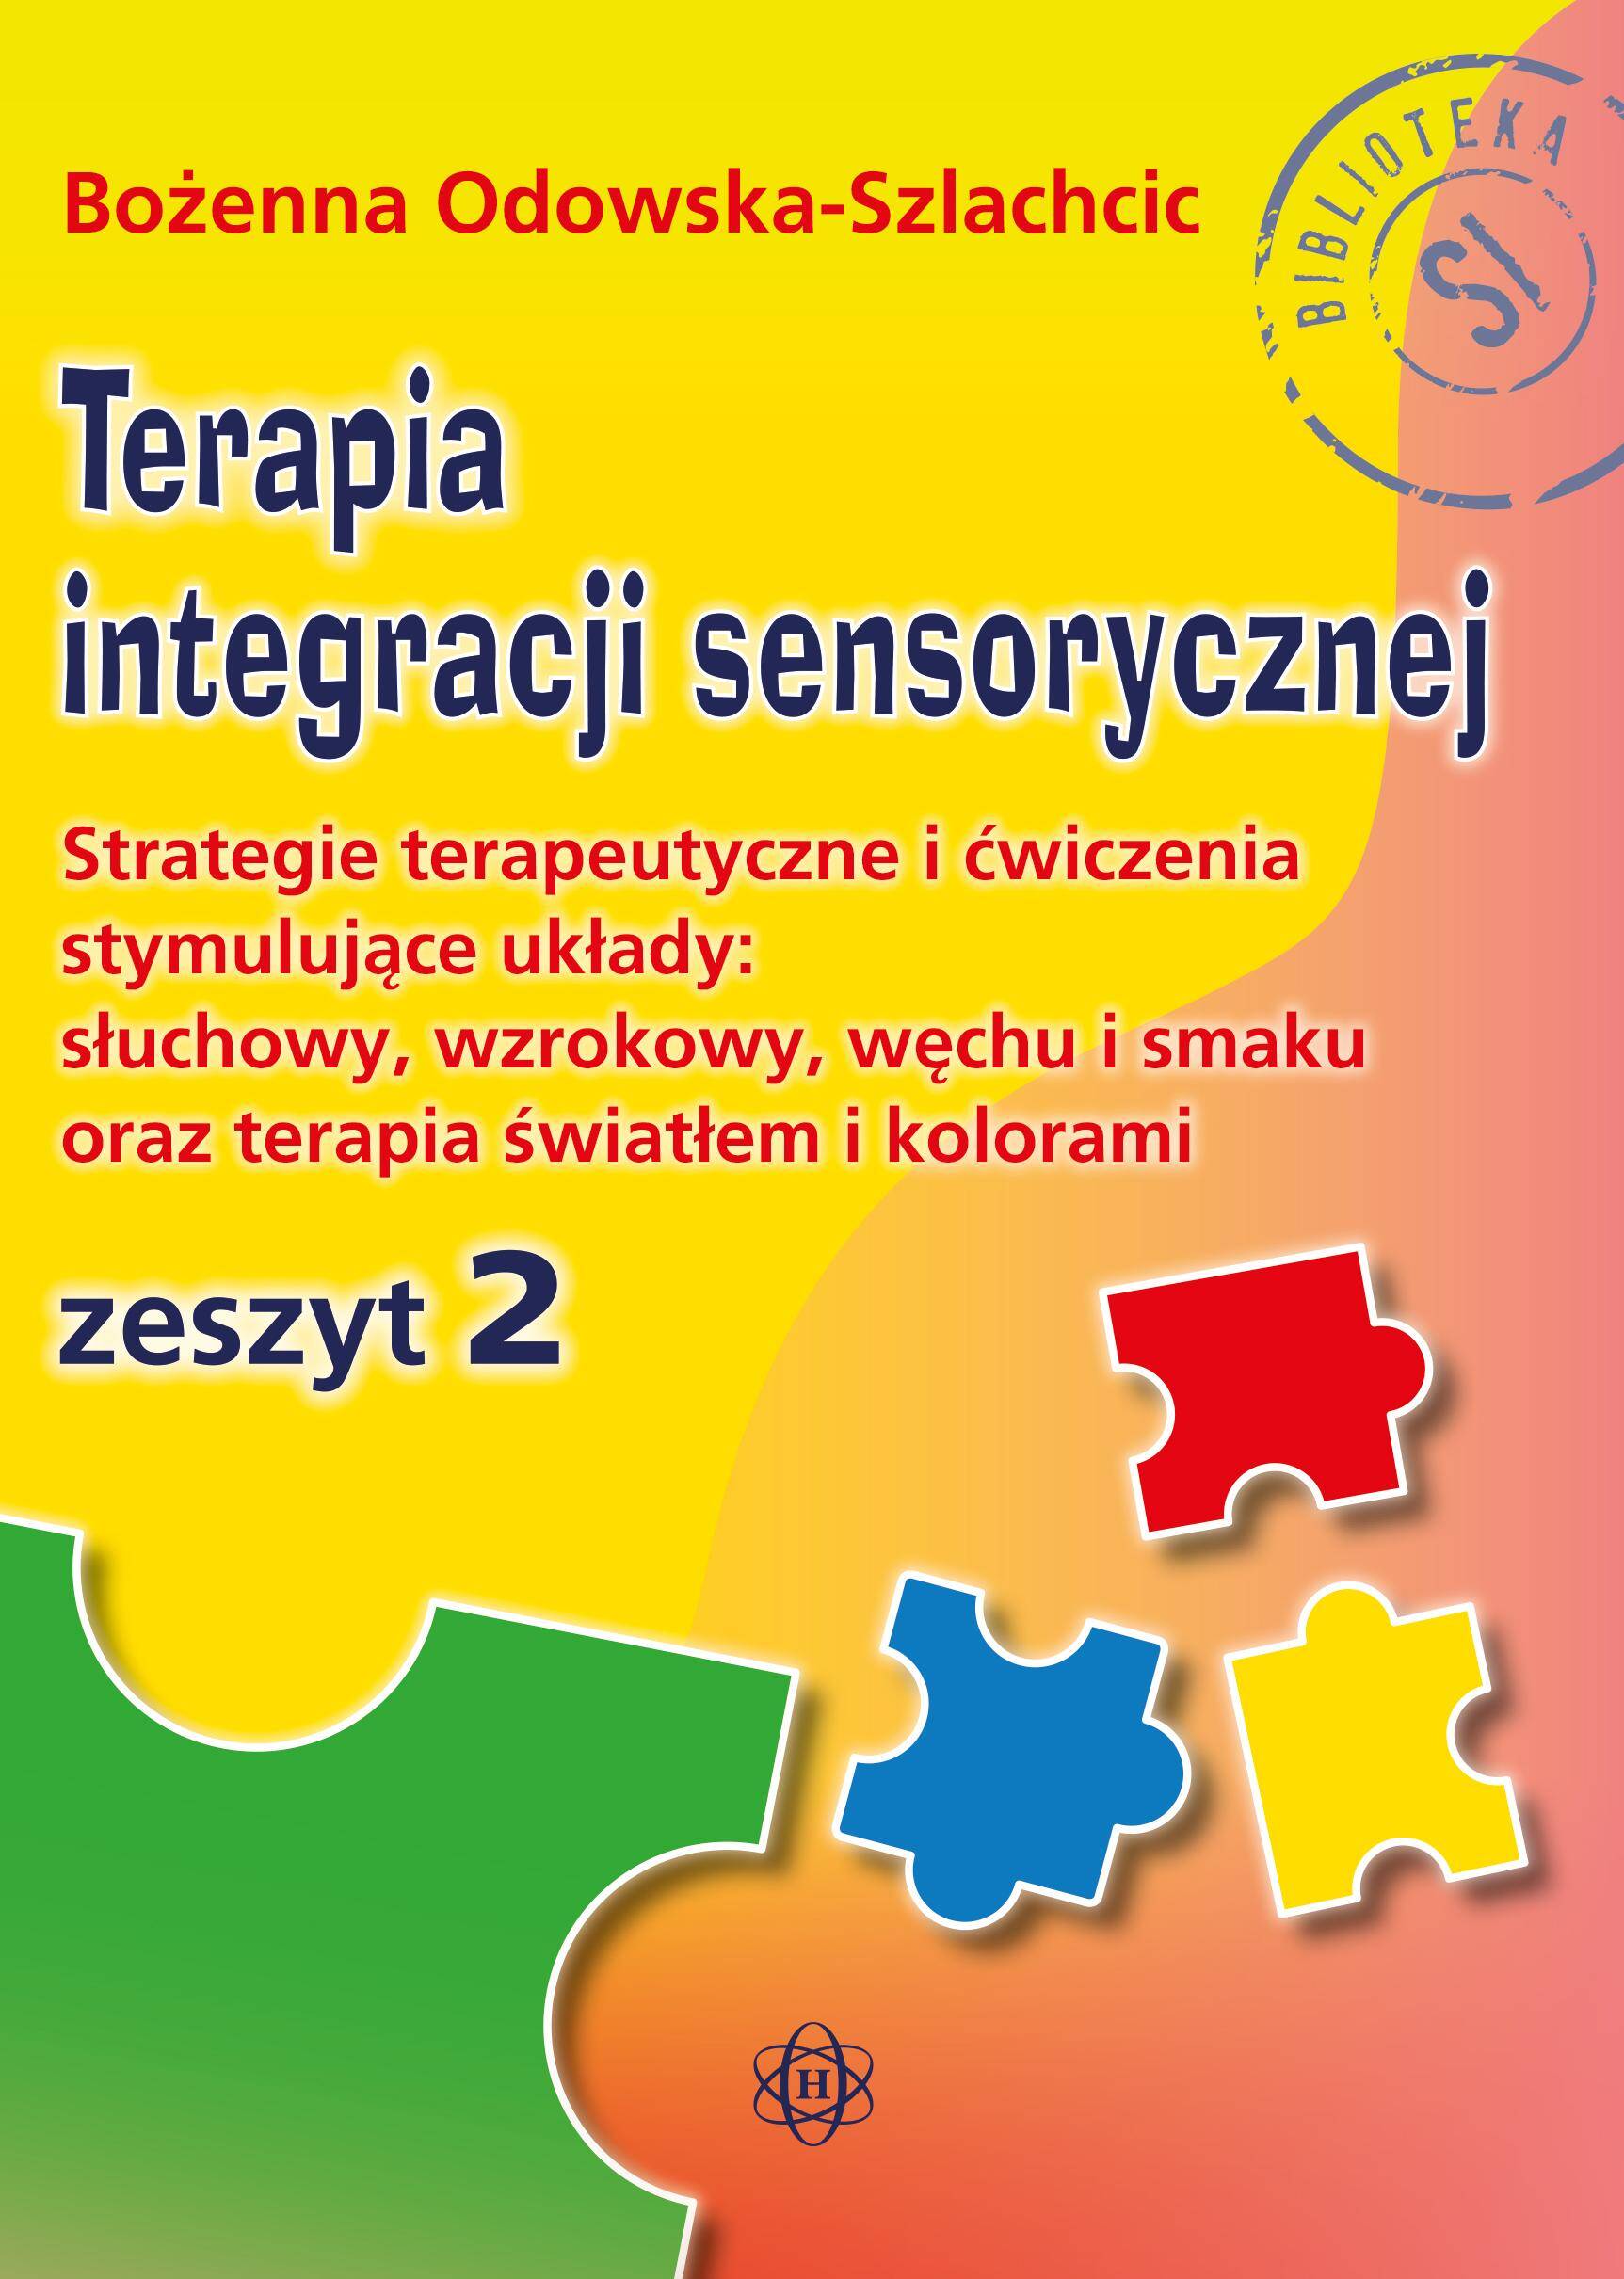 Terapia integracji sensorycznej Zeszyt 2. Strategie terapeutyczne i ćwiczenia stymulujące układy: słuchowy, wzrokowy, węchu i smaku oraz terapia światłem i kolorami